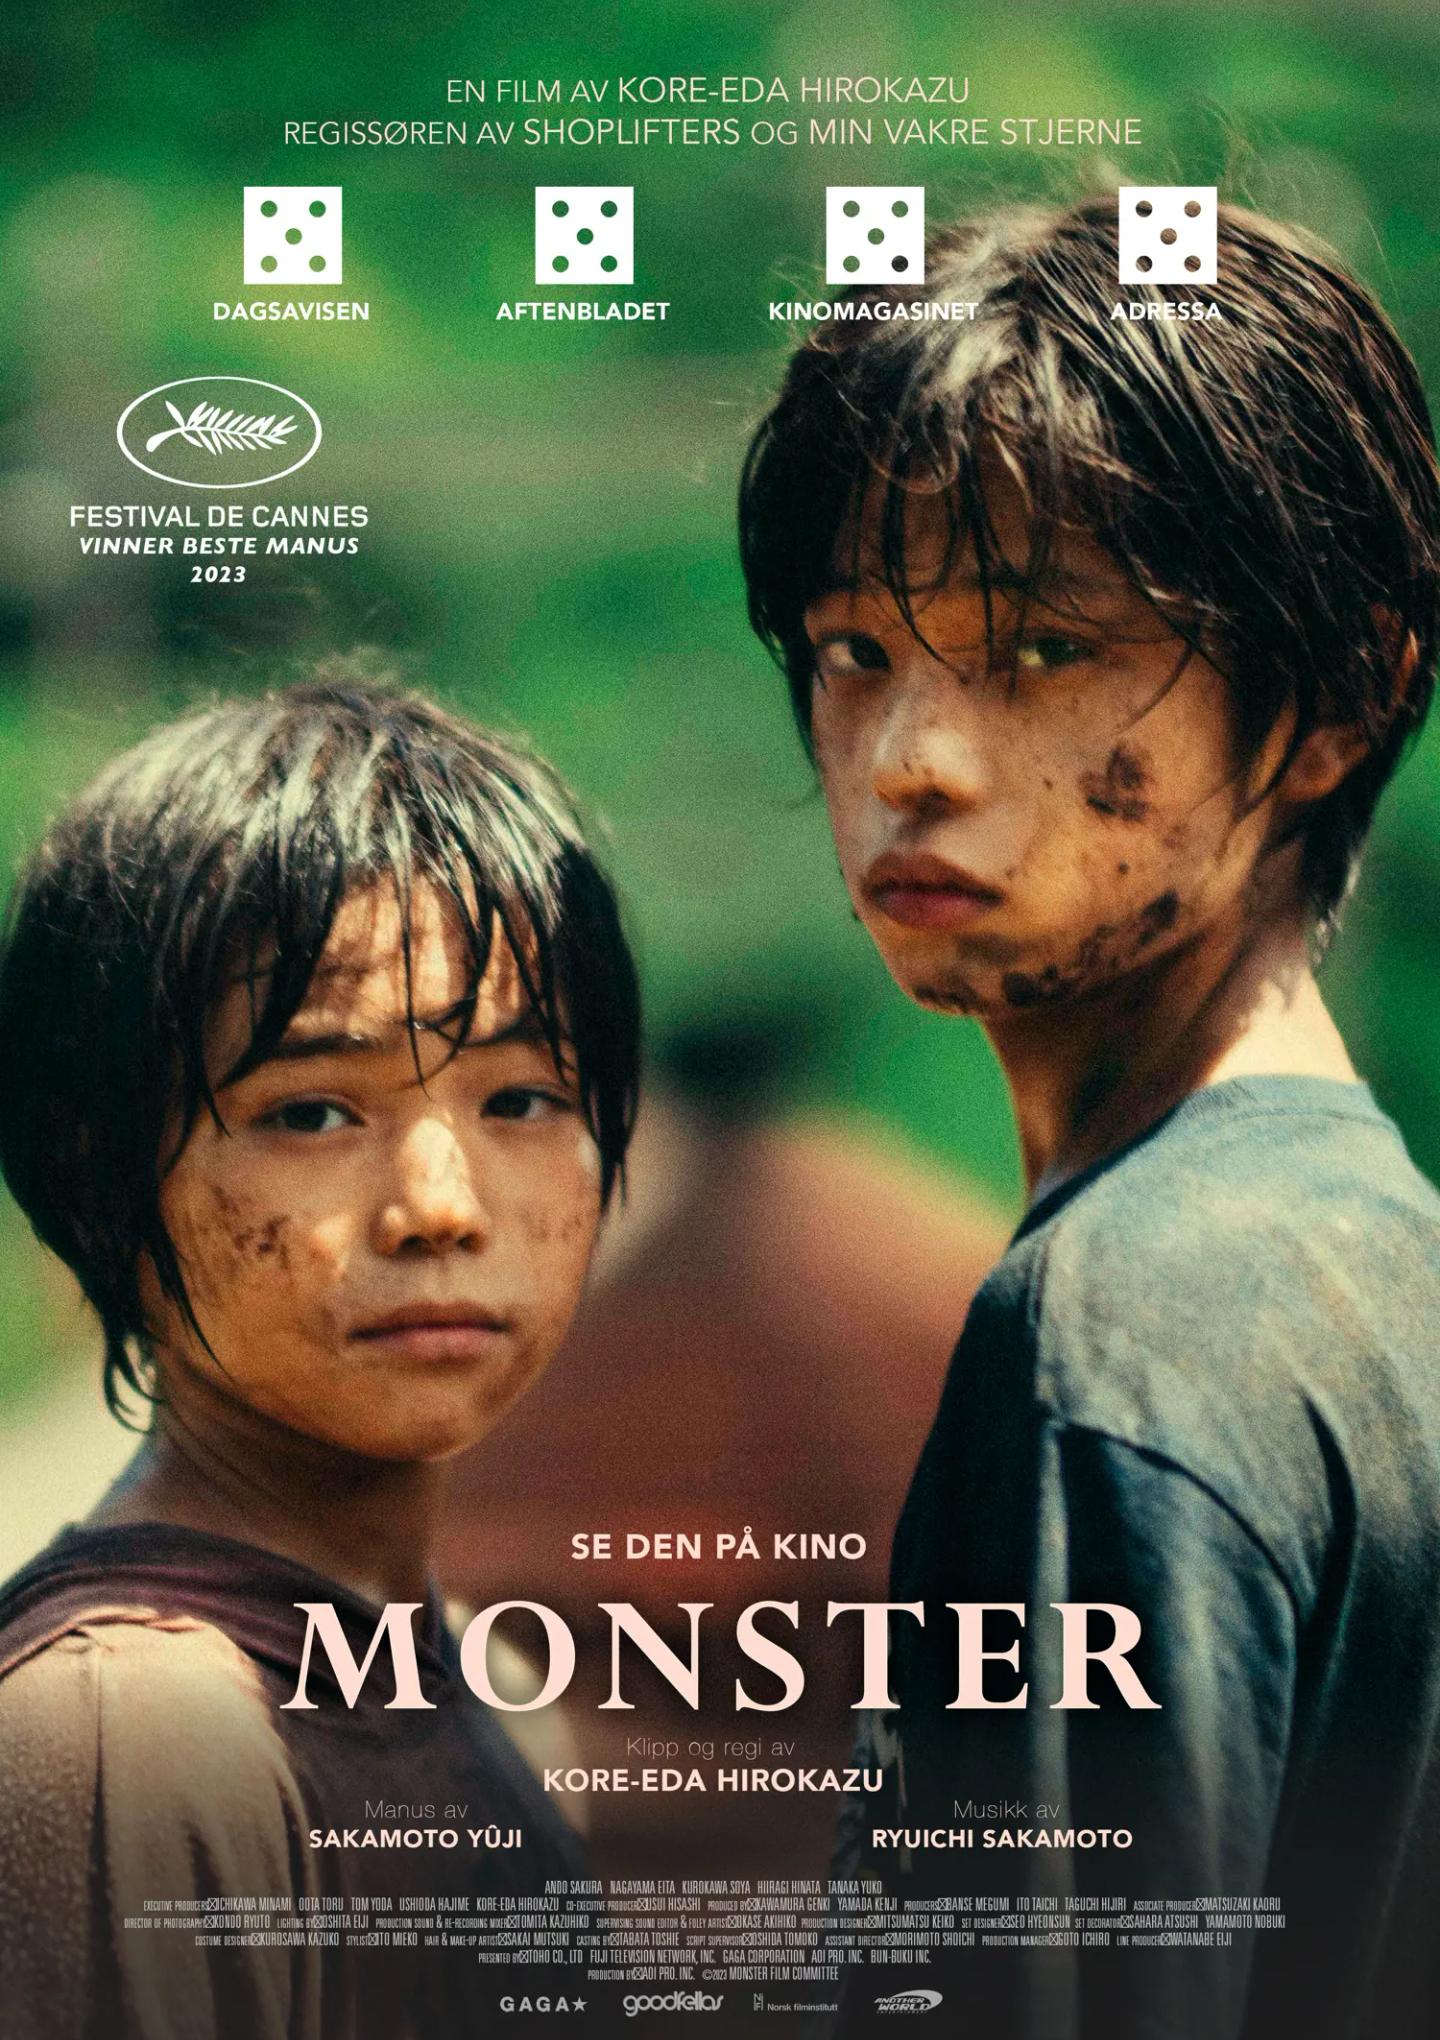 Plakat for 'Monster'